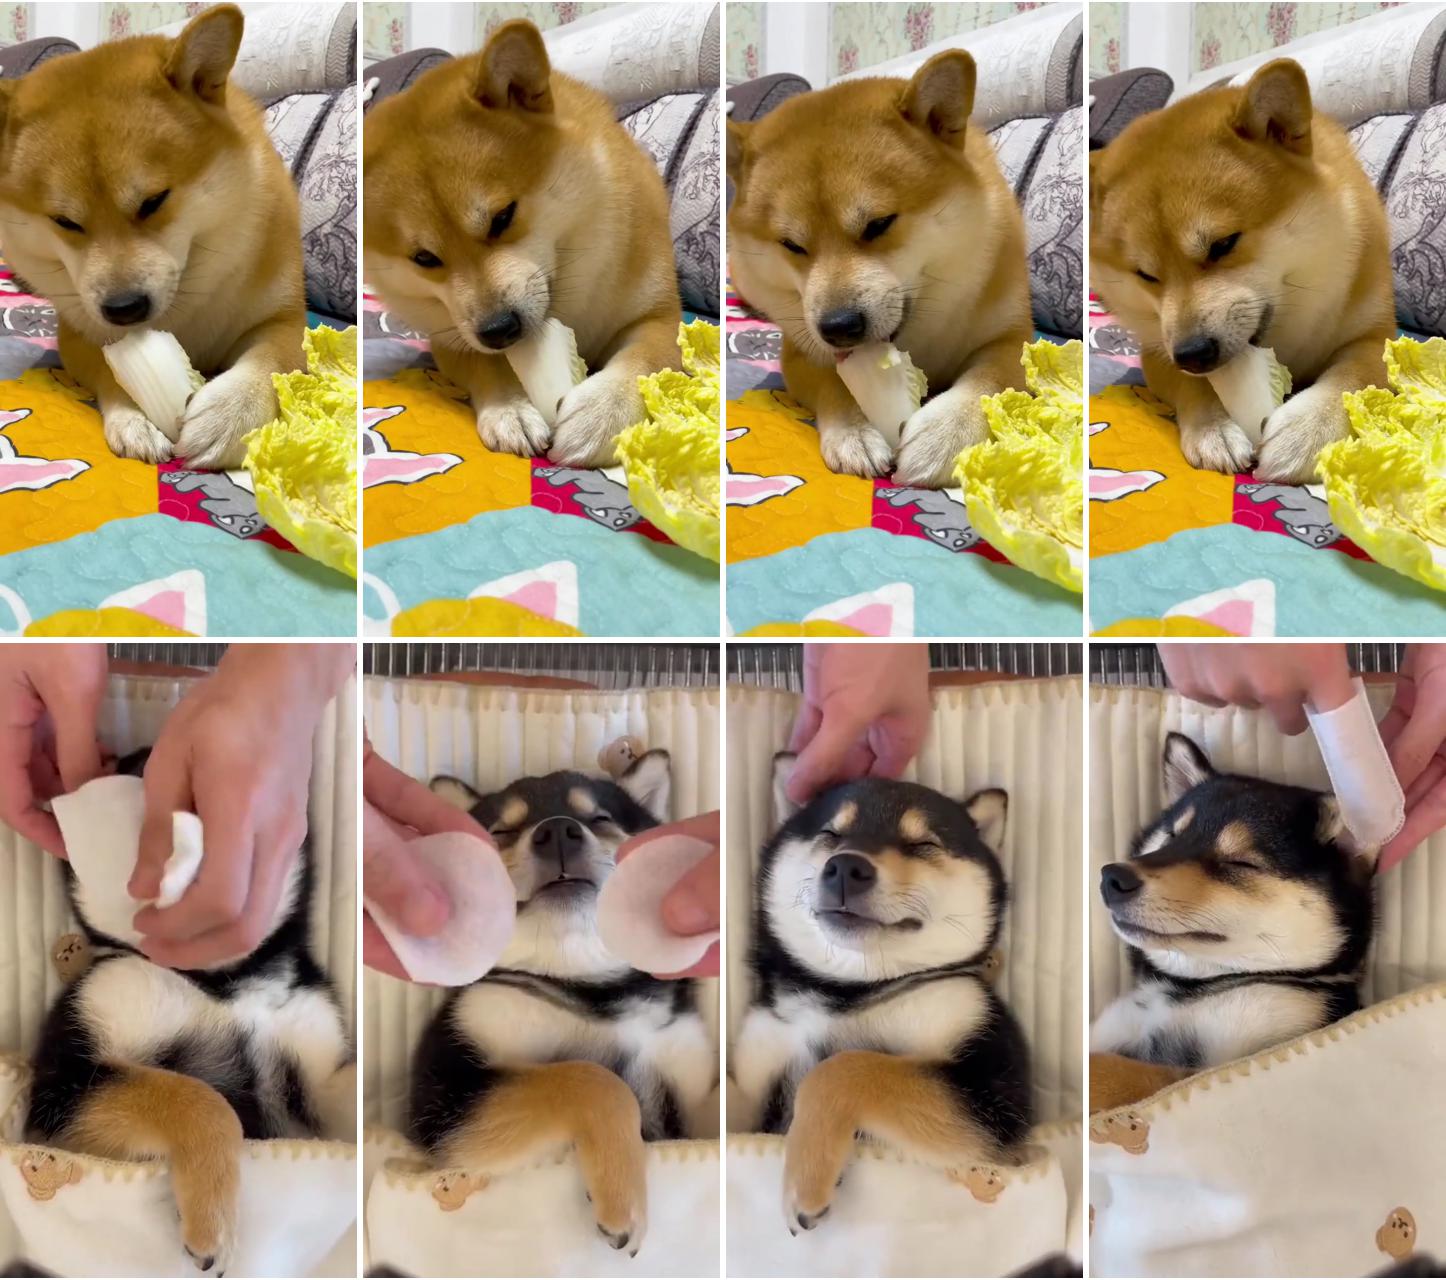 Dog:i like to eat cabbage; dog care and massage